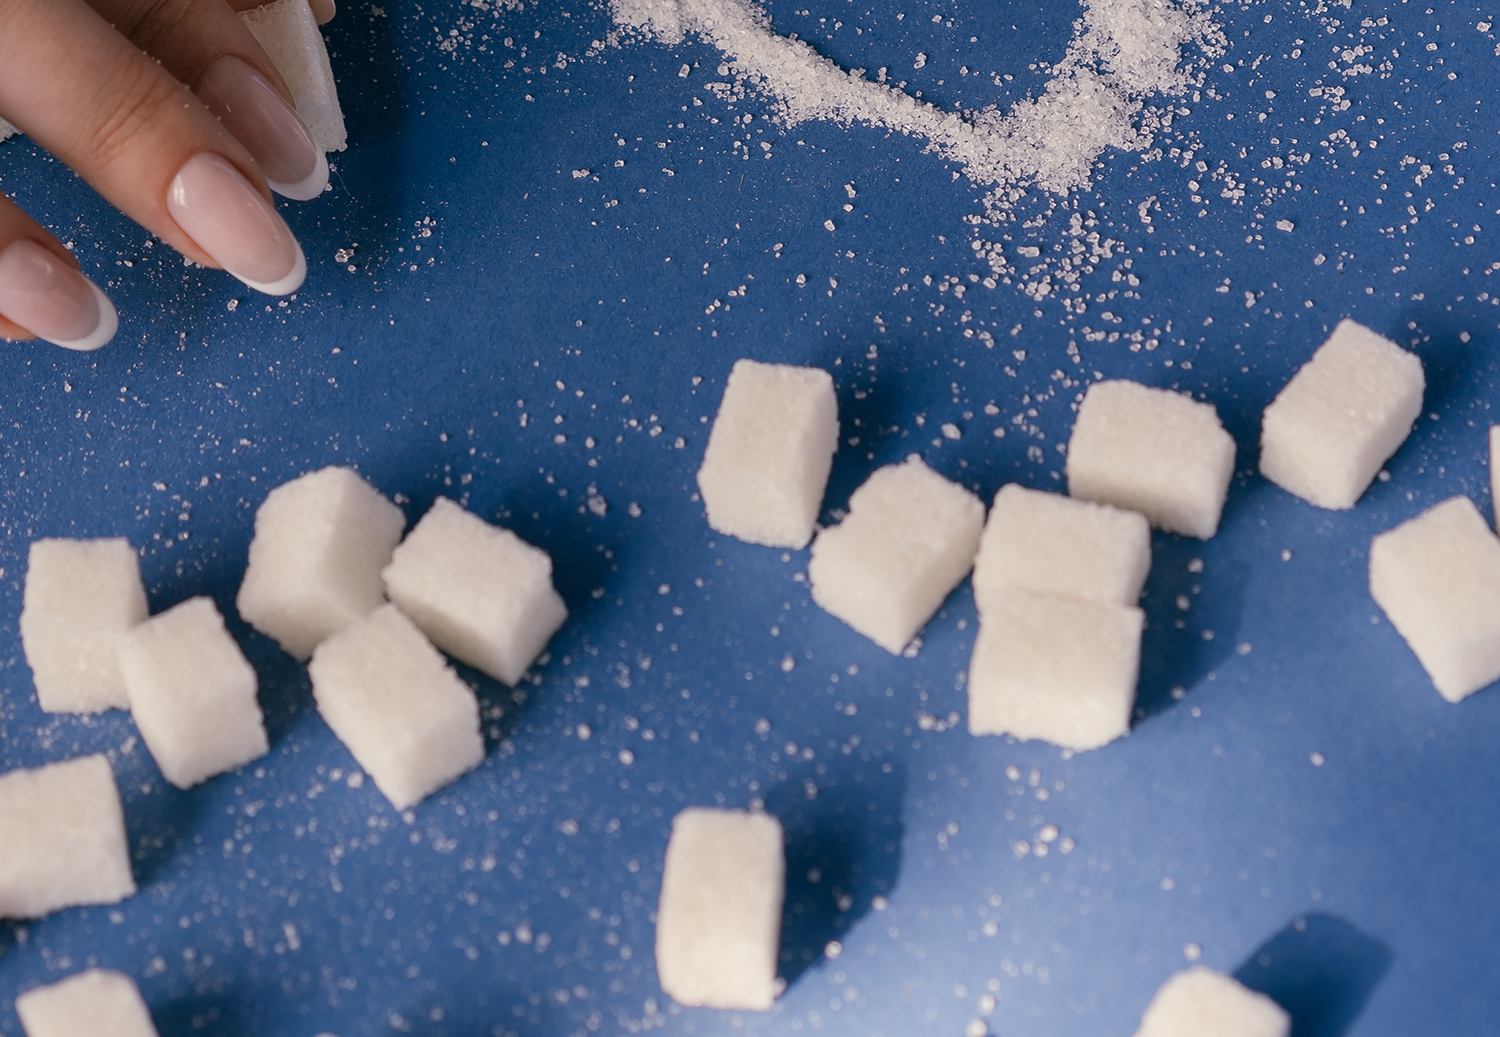 Guide to Reducing Sugar Intake